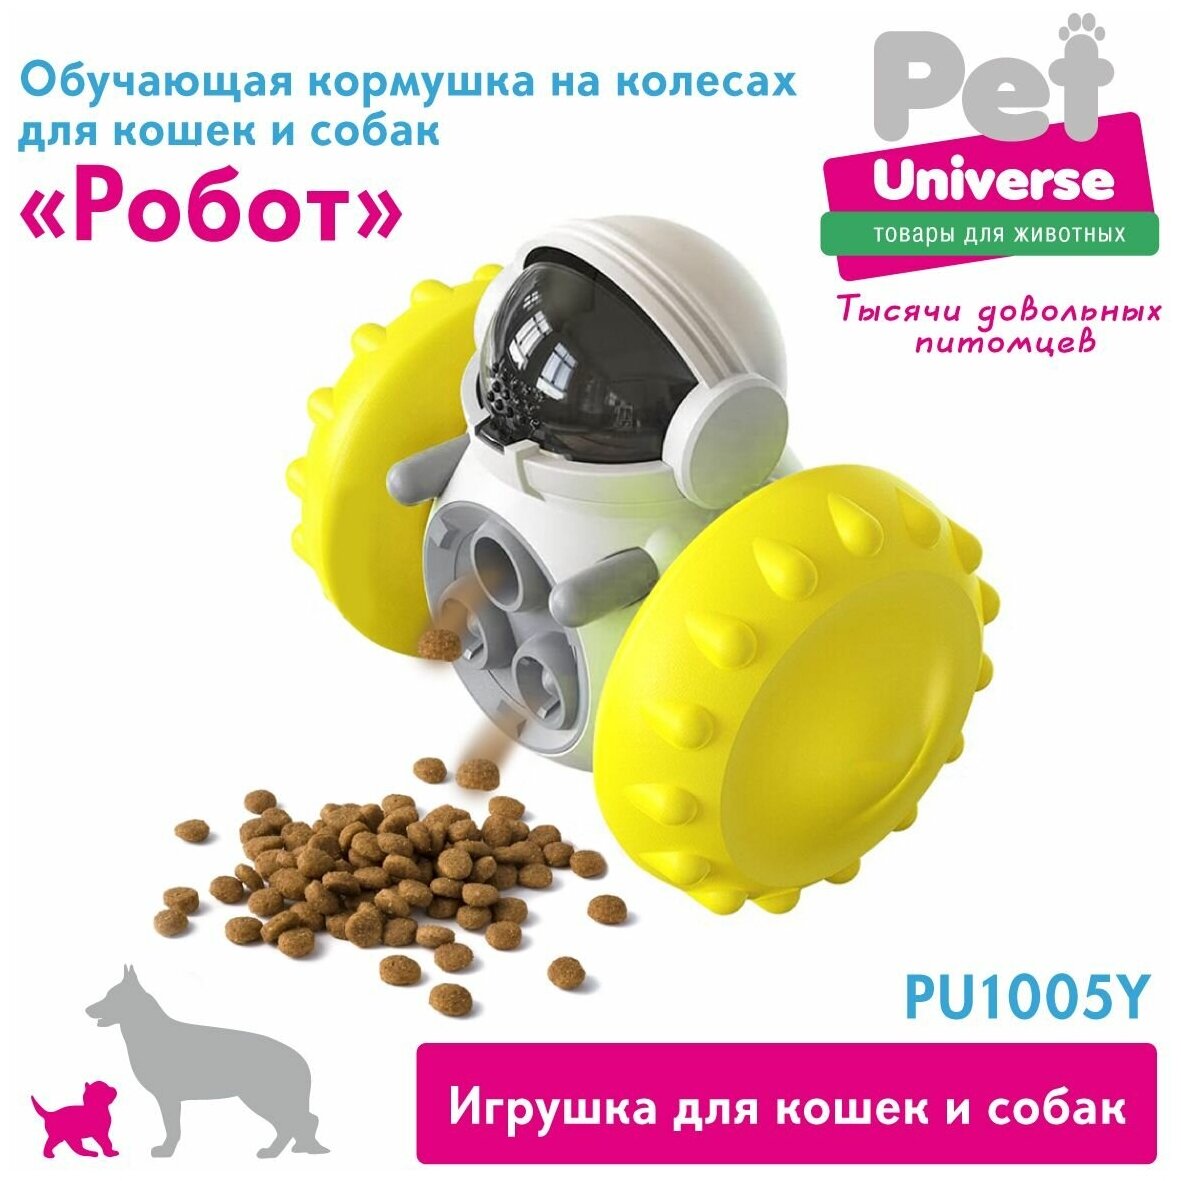 Развивающая игрушка игрушка для собак и кошек Робот на колесах Pet Universe. Головоломка, дозатор для медленной еды и лакомств/ IQ PU1005Y